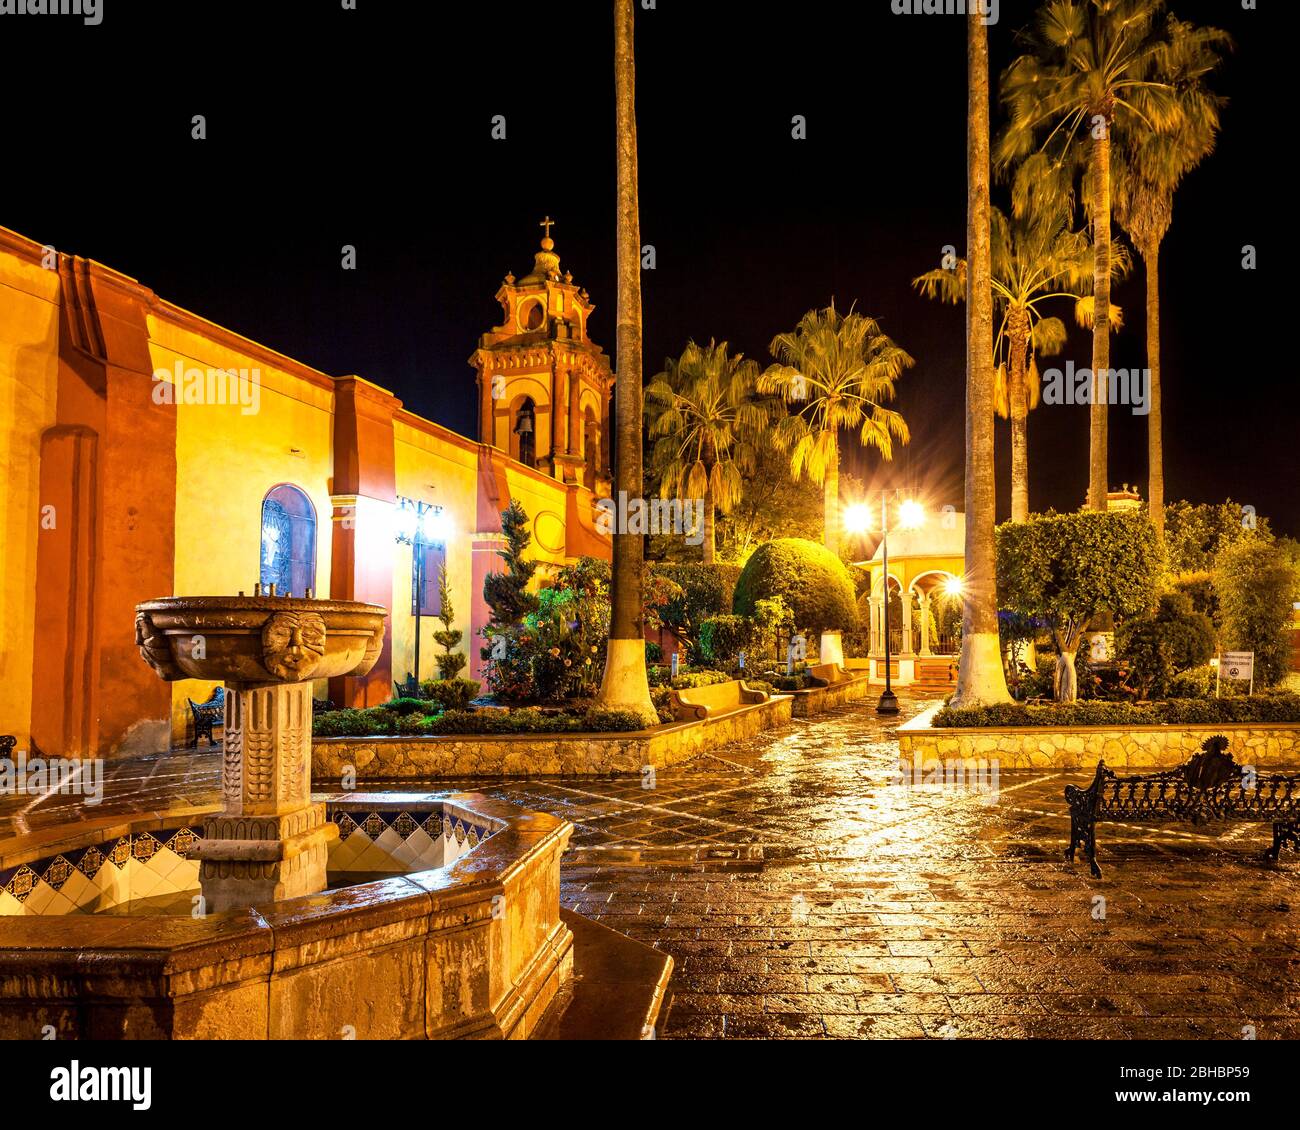 Rainy night on the plaza of Bernal, Queretaro, Mexico. Stock Photo